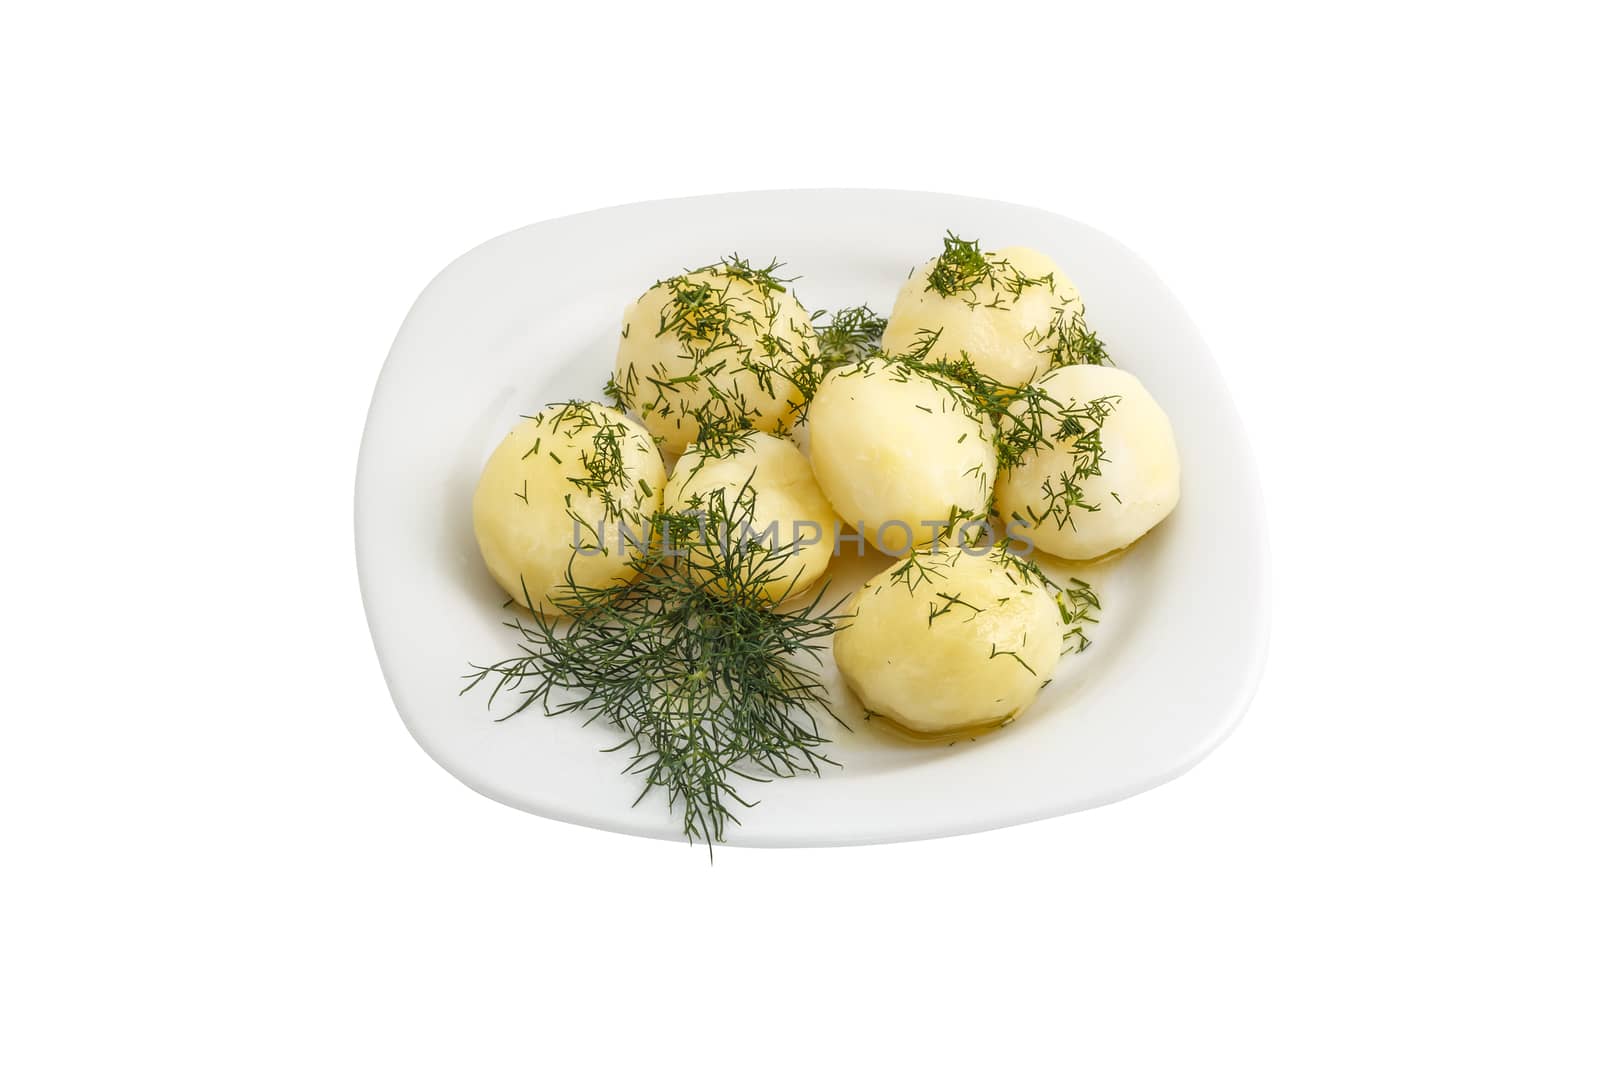 boiled potatoes by fogen